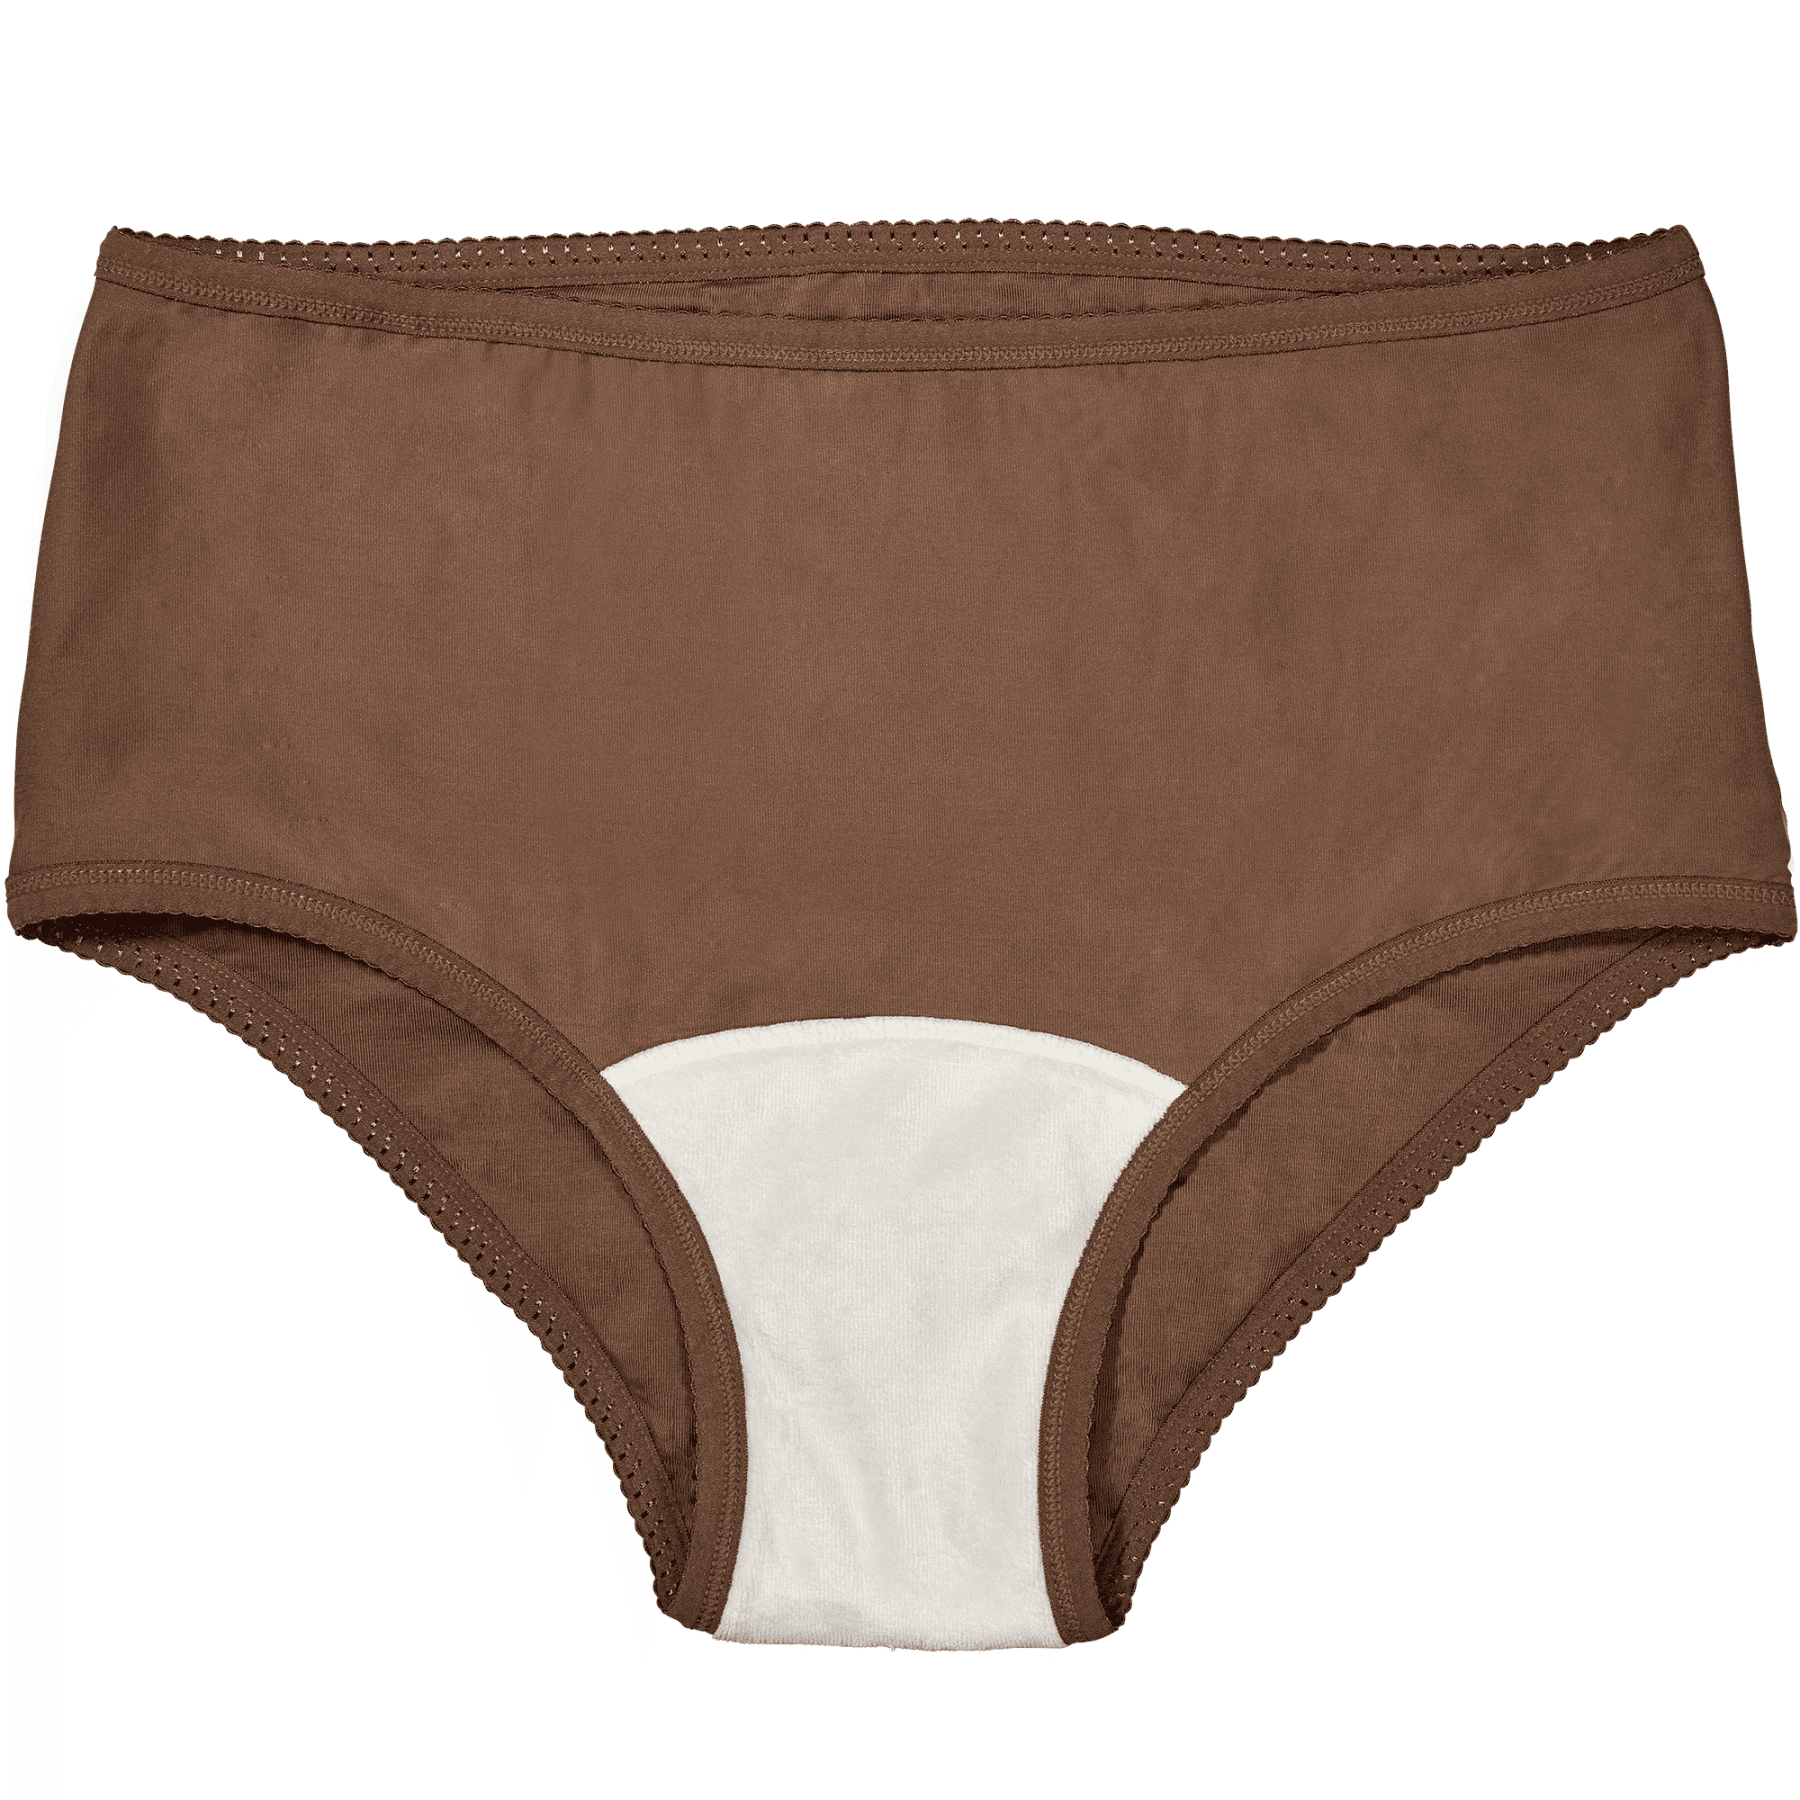 Period Underwear - Heavy Flow Cedar- inside front